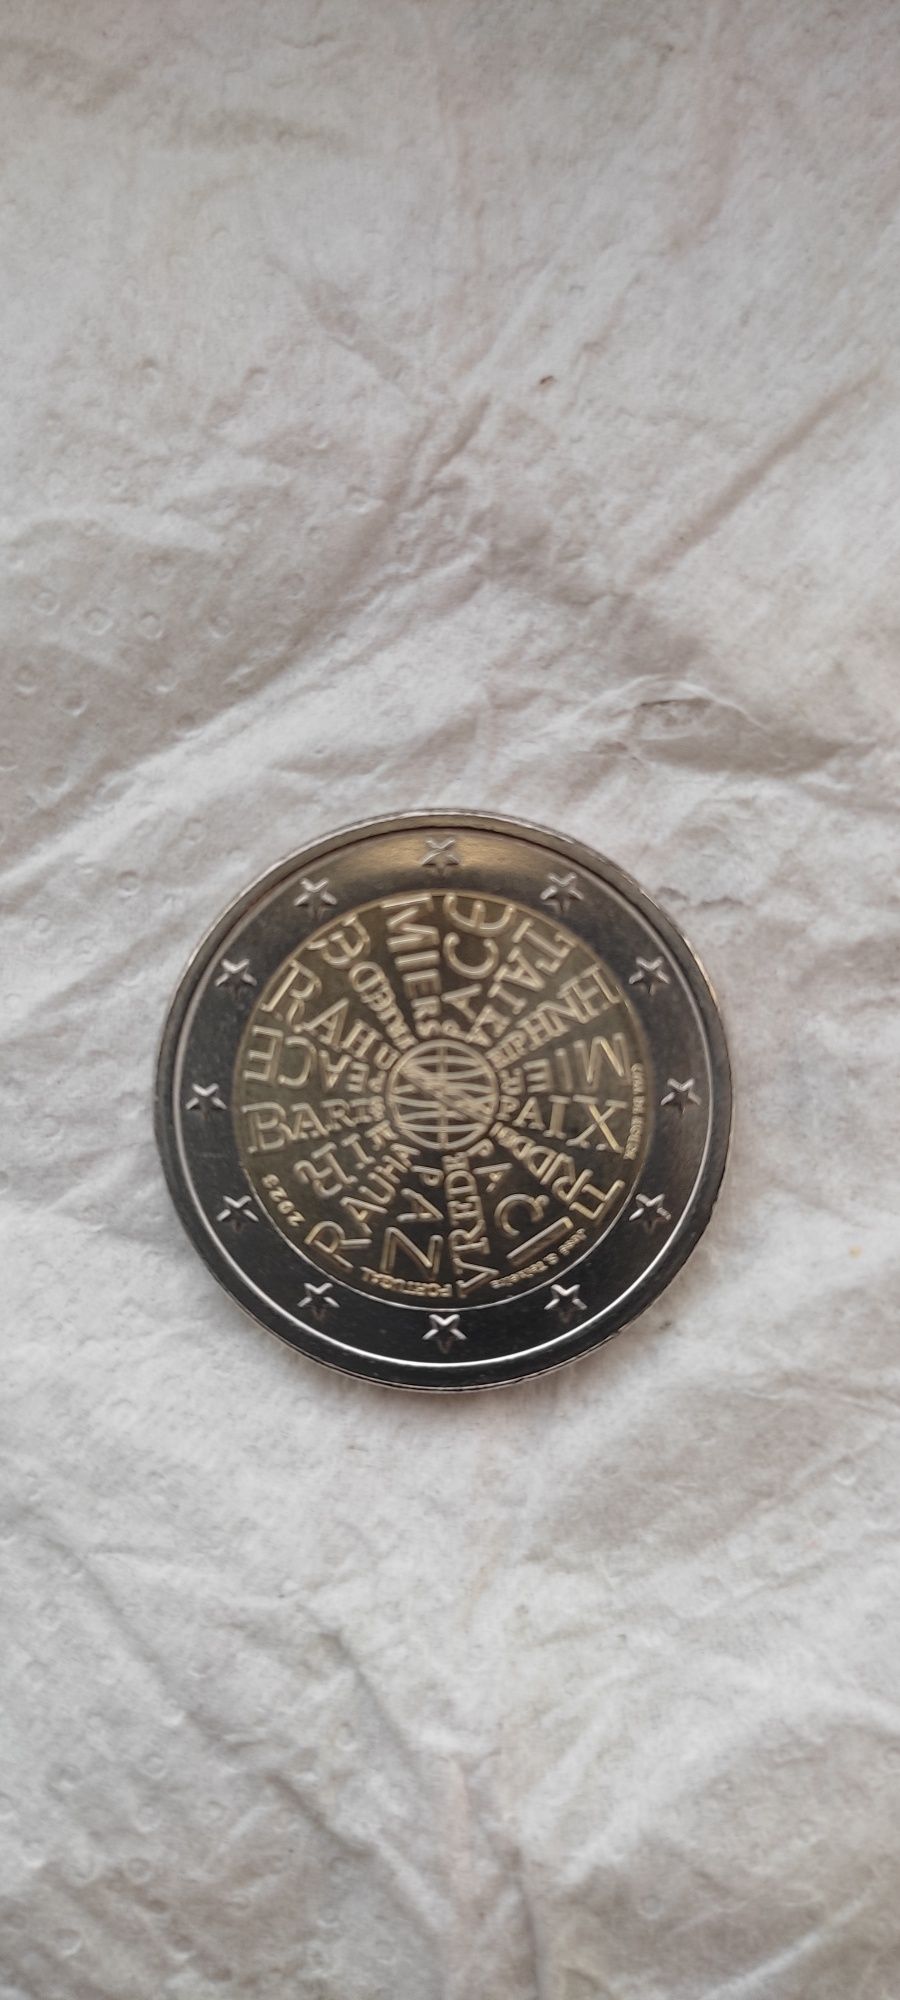 Nova moeda comemorativa rolo de 2€